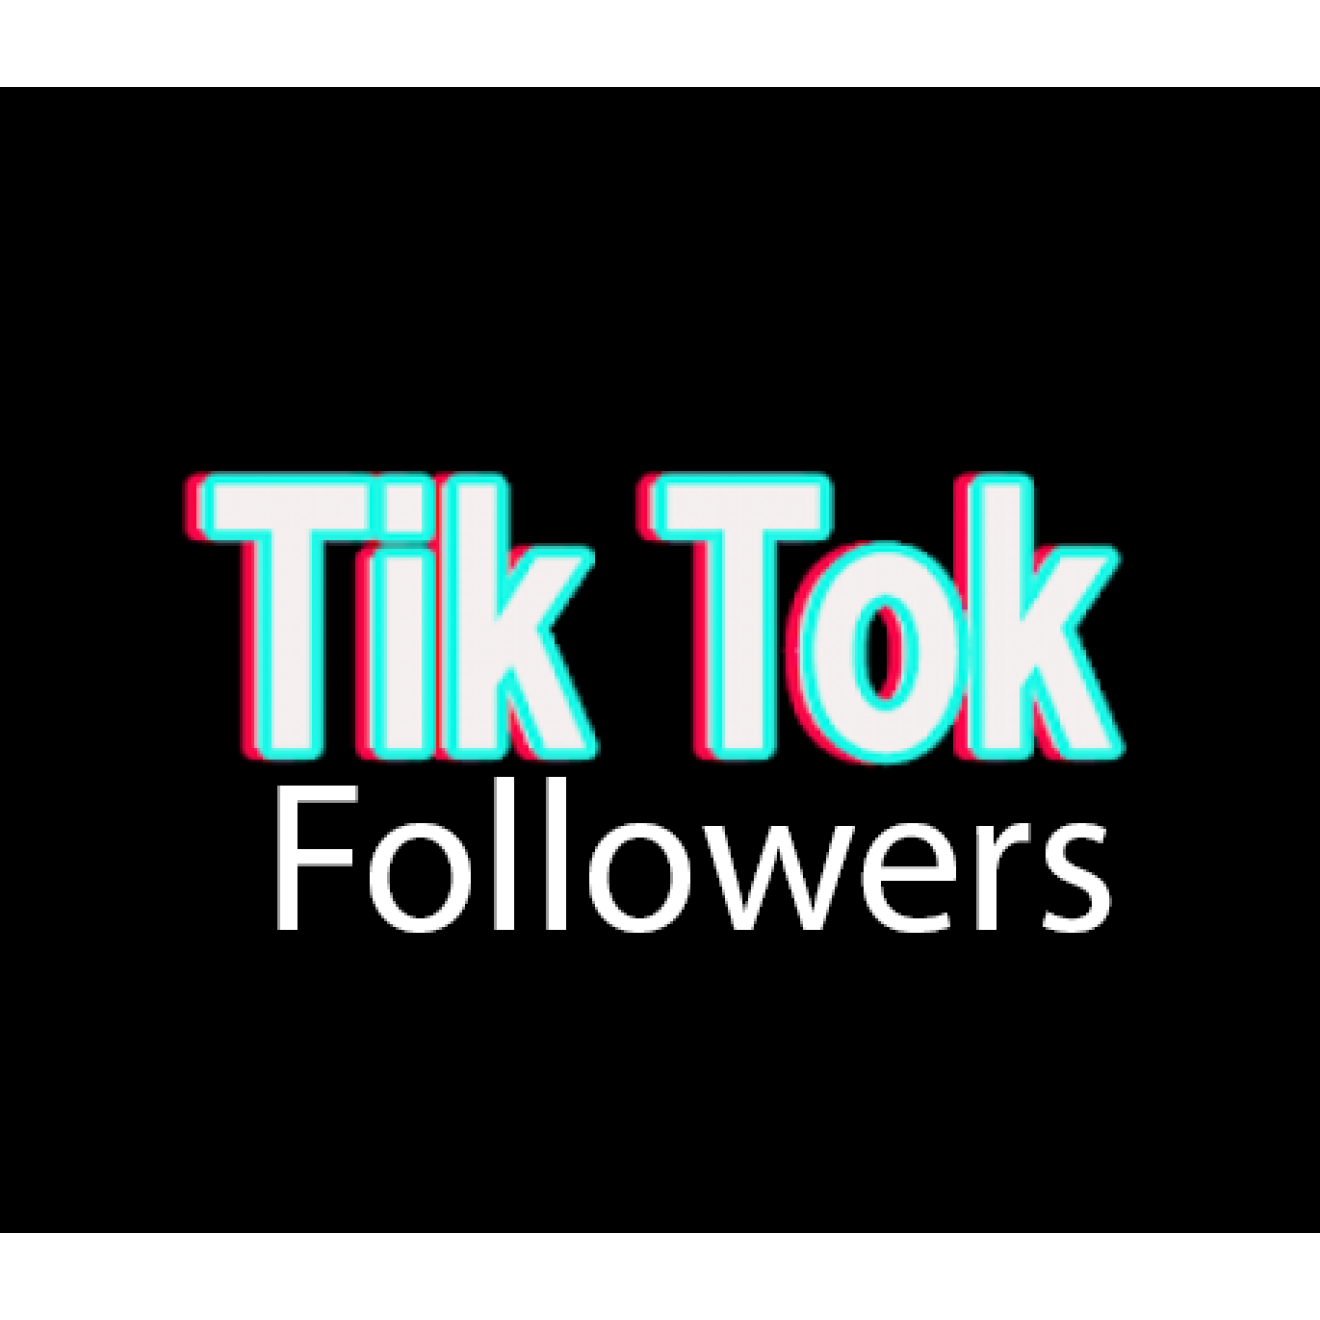 1500 TikTok Followers / Abonnenten für Dich